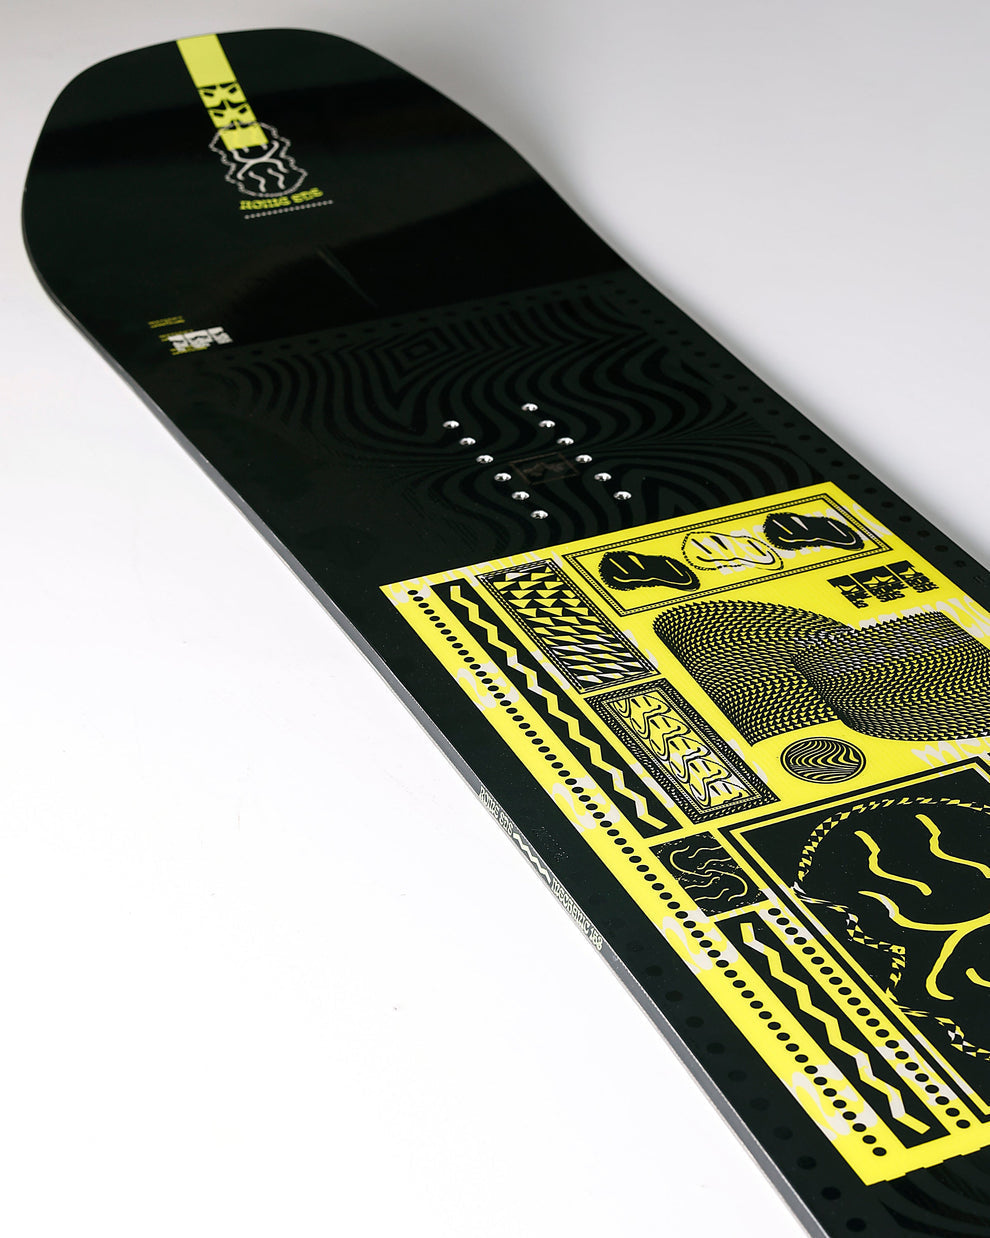 Rome snowboards Mechanic 161 Large | Nouveaux produits | Produits les plus récents | Produits les plus vendus | surfdevils.com